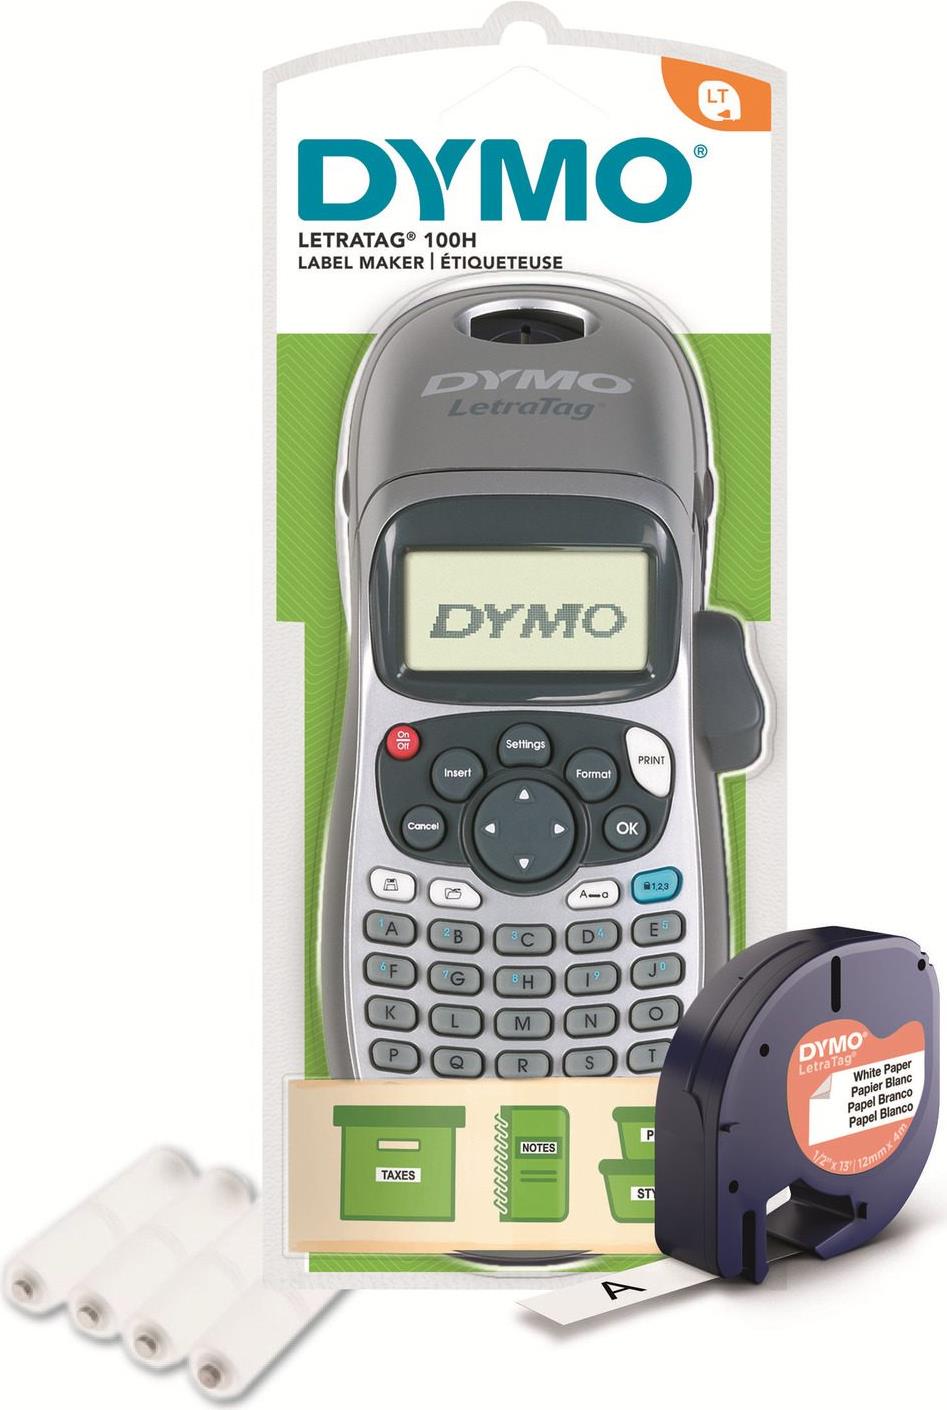 DYMO LetraTag LT-100H Beschriftungsgerät - Silber Edition inkl. Batterien (2174577)